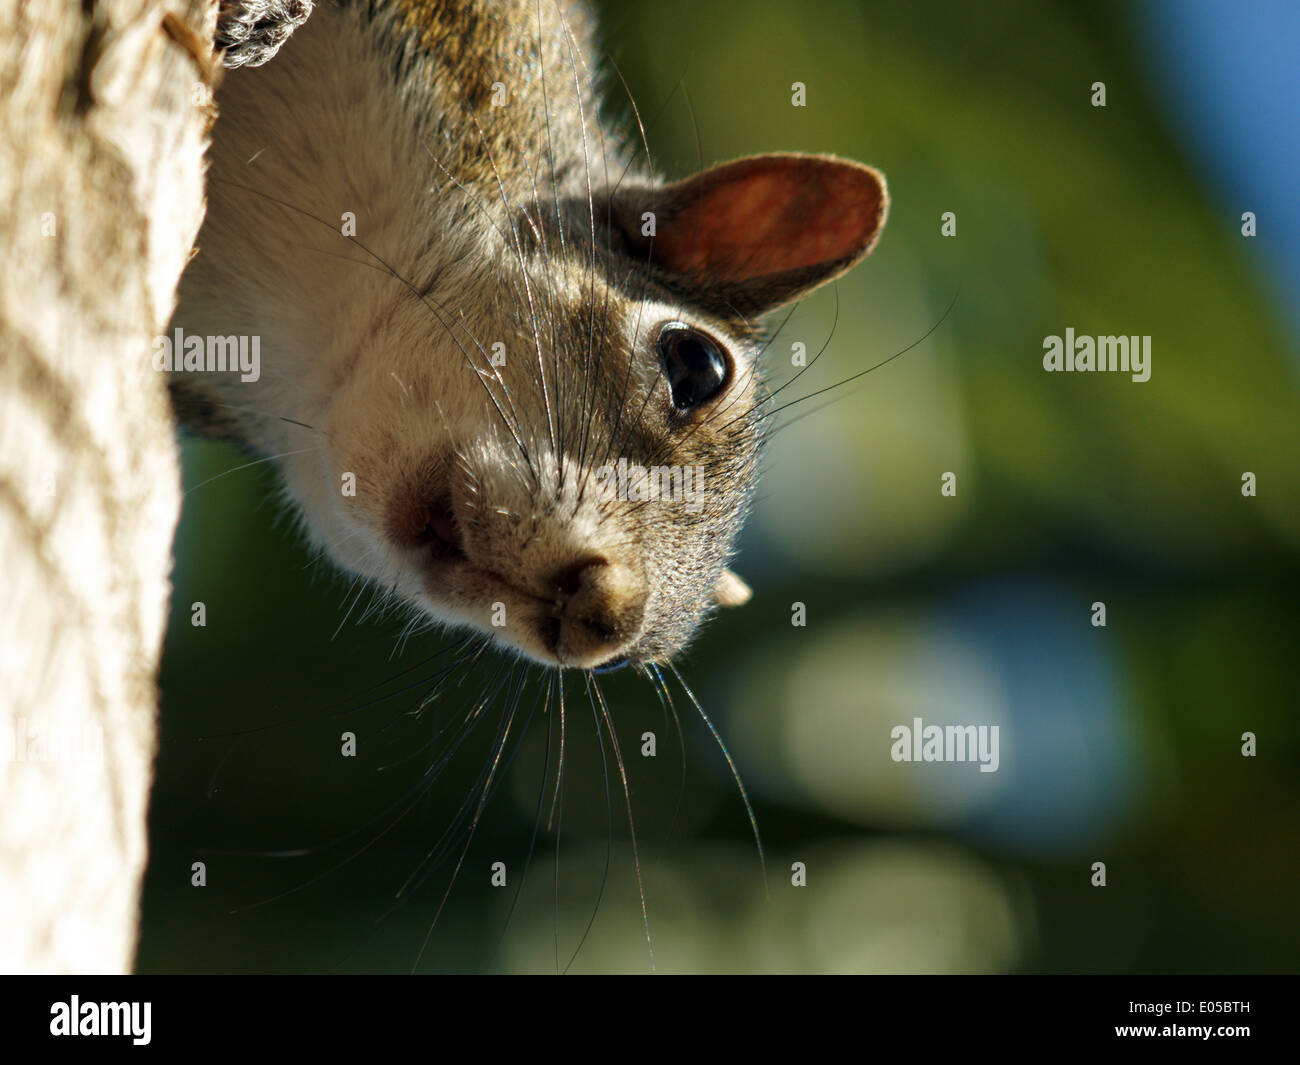 Gros plan extrême d'un écureuil accroché à un tronc d'arbre, la tête en bas, regardant la caméra Banque D'Images